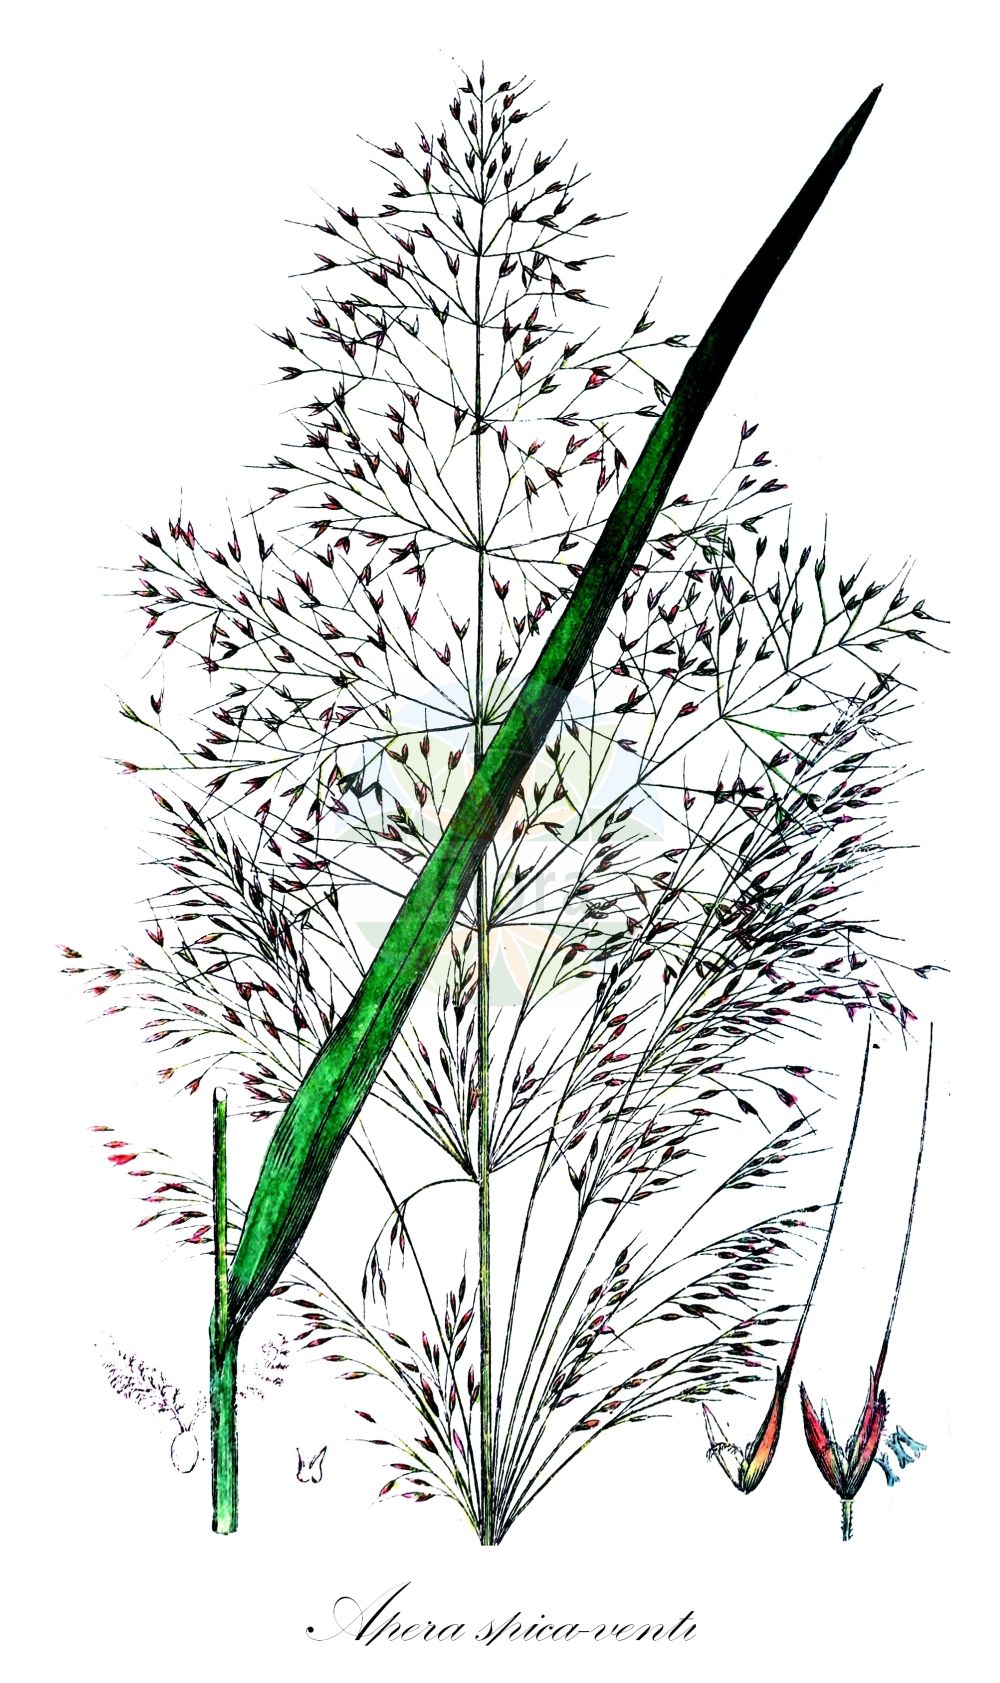 Historische Abbildung von Apera spica-venti (Acker-Windhalm - Loose Silky-bent). Das Bild zeigt Blatt, Bluete, Frucht und Same. ---- Historical Drawing of Apera spica-venti (Acker-Windhalm - Loose Silky-bent). The image is showing leaf, flower, fruit and seed.(Apera spica-venti,Acker-Windhalm,Loose Silky-bent,Agrostis spica-venti,Apera longiseta,Apera spica-venti,Acker-Windhalm,Loose Silky-bent,Silky Apera,Silky Bent,Silky Wind Grass,Wind Grass,Apera,Windhalm,Silkybent,Poaceae,Süßgräser,Grass family,Blatt,Bluete,Frucht,Same,leaf,flower,fruit,seed,Svensk Botanik (Svensk Botanik))